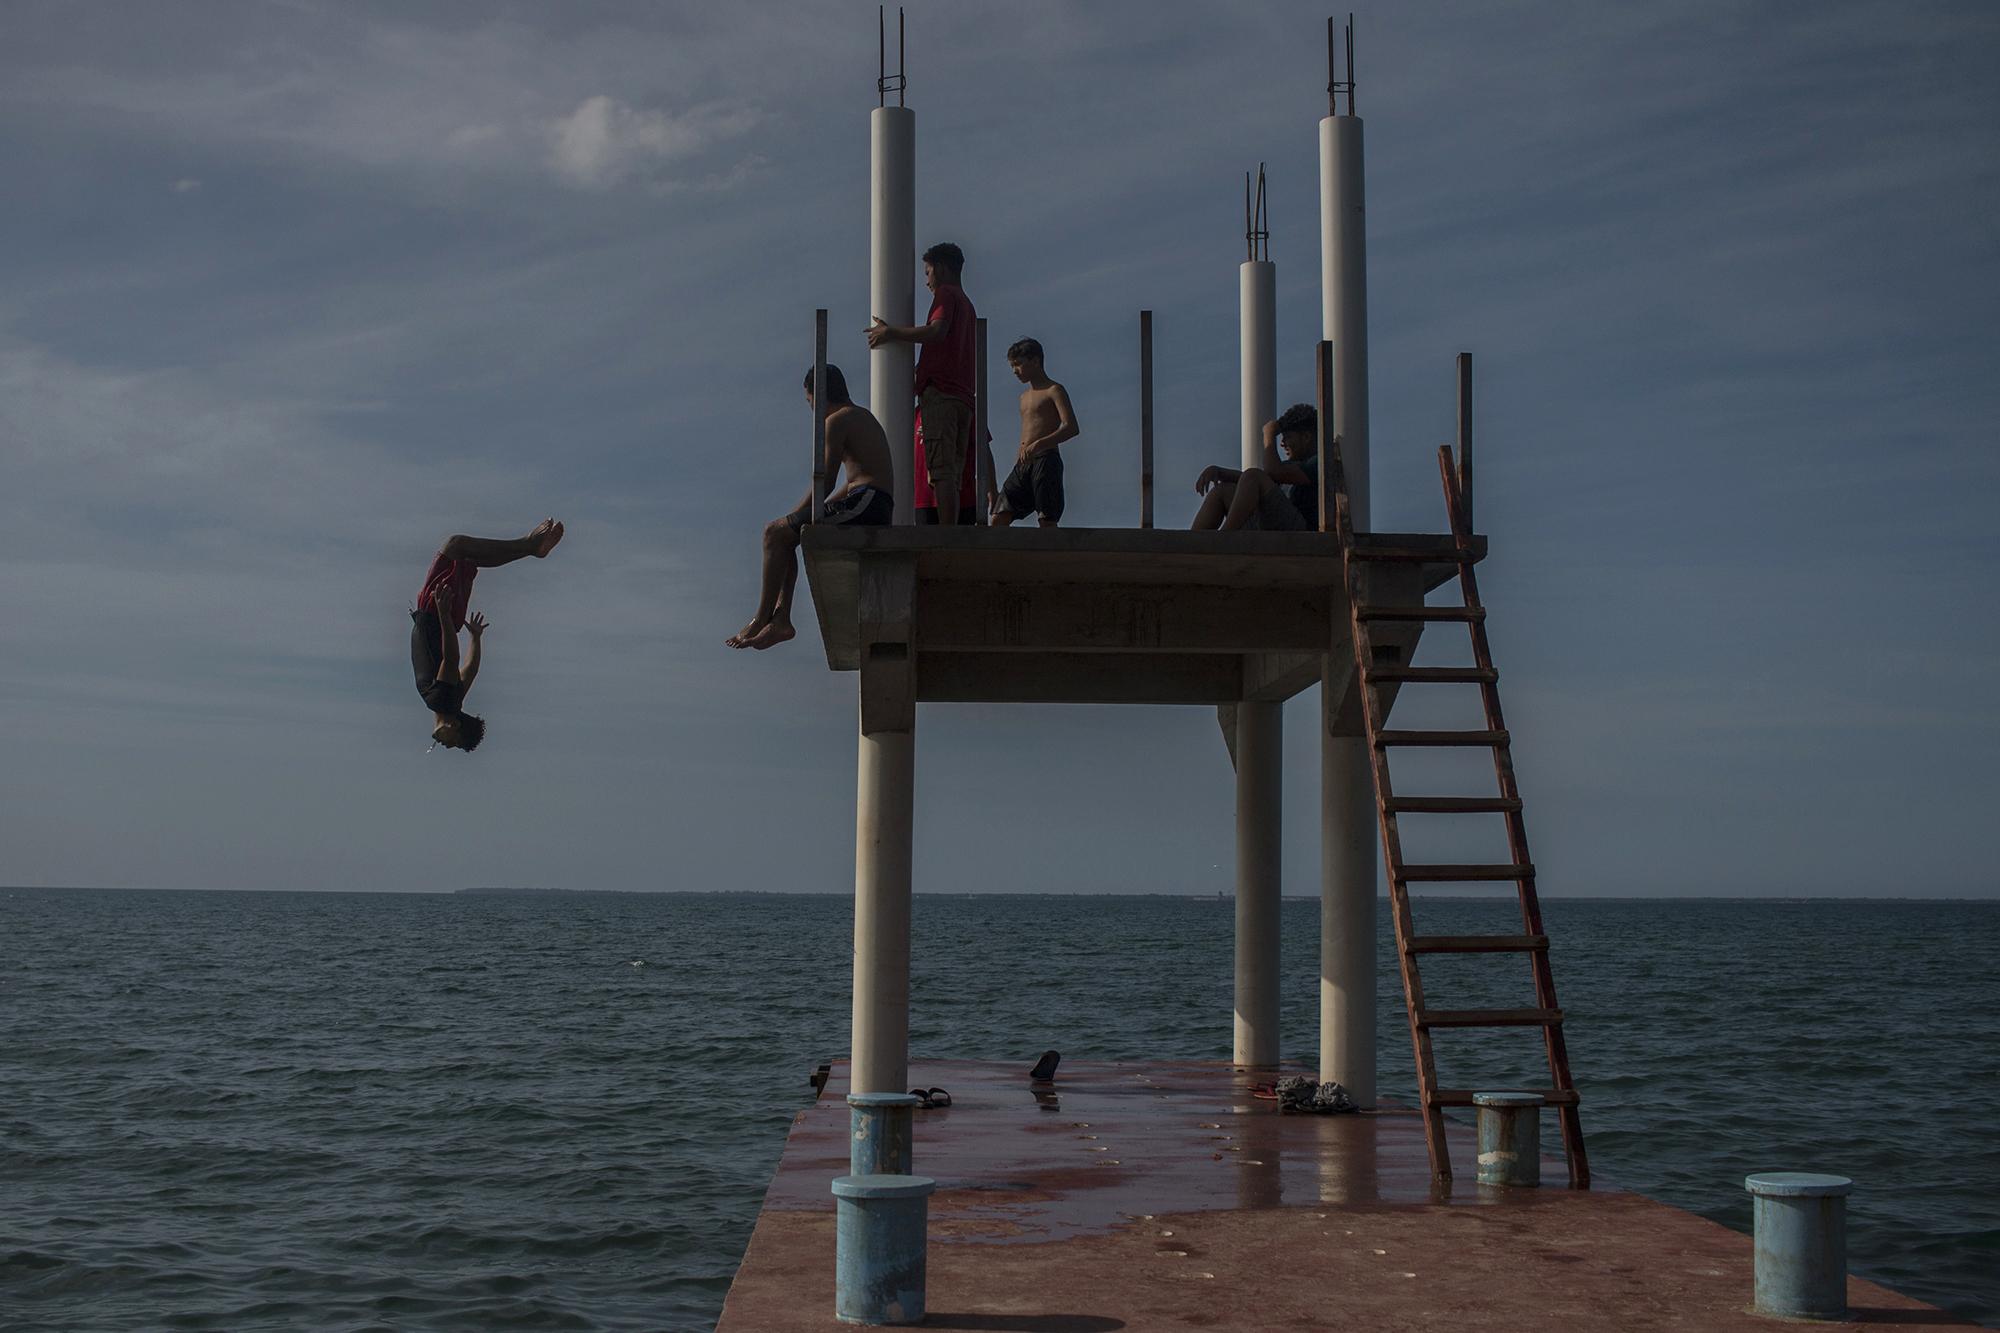 Turistas locales juegan a los clavados en el muelle artesanal de la bahía de Trujillo. Este es uno de los distractores para los jóvenes que habitan este pueblo. Foto de El Faro: Víctor Peña.